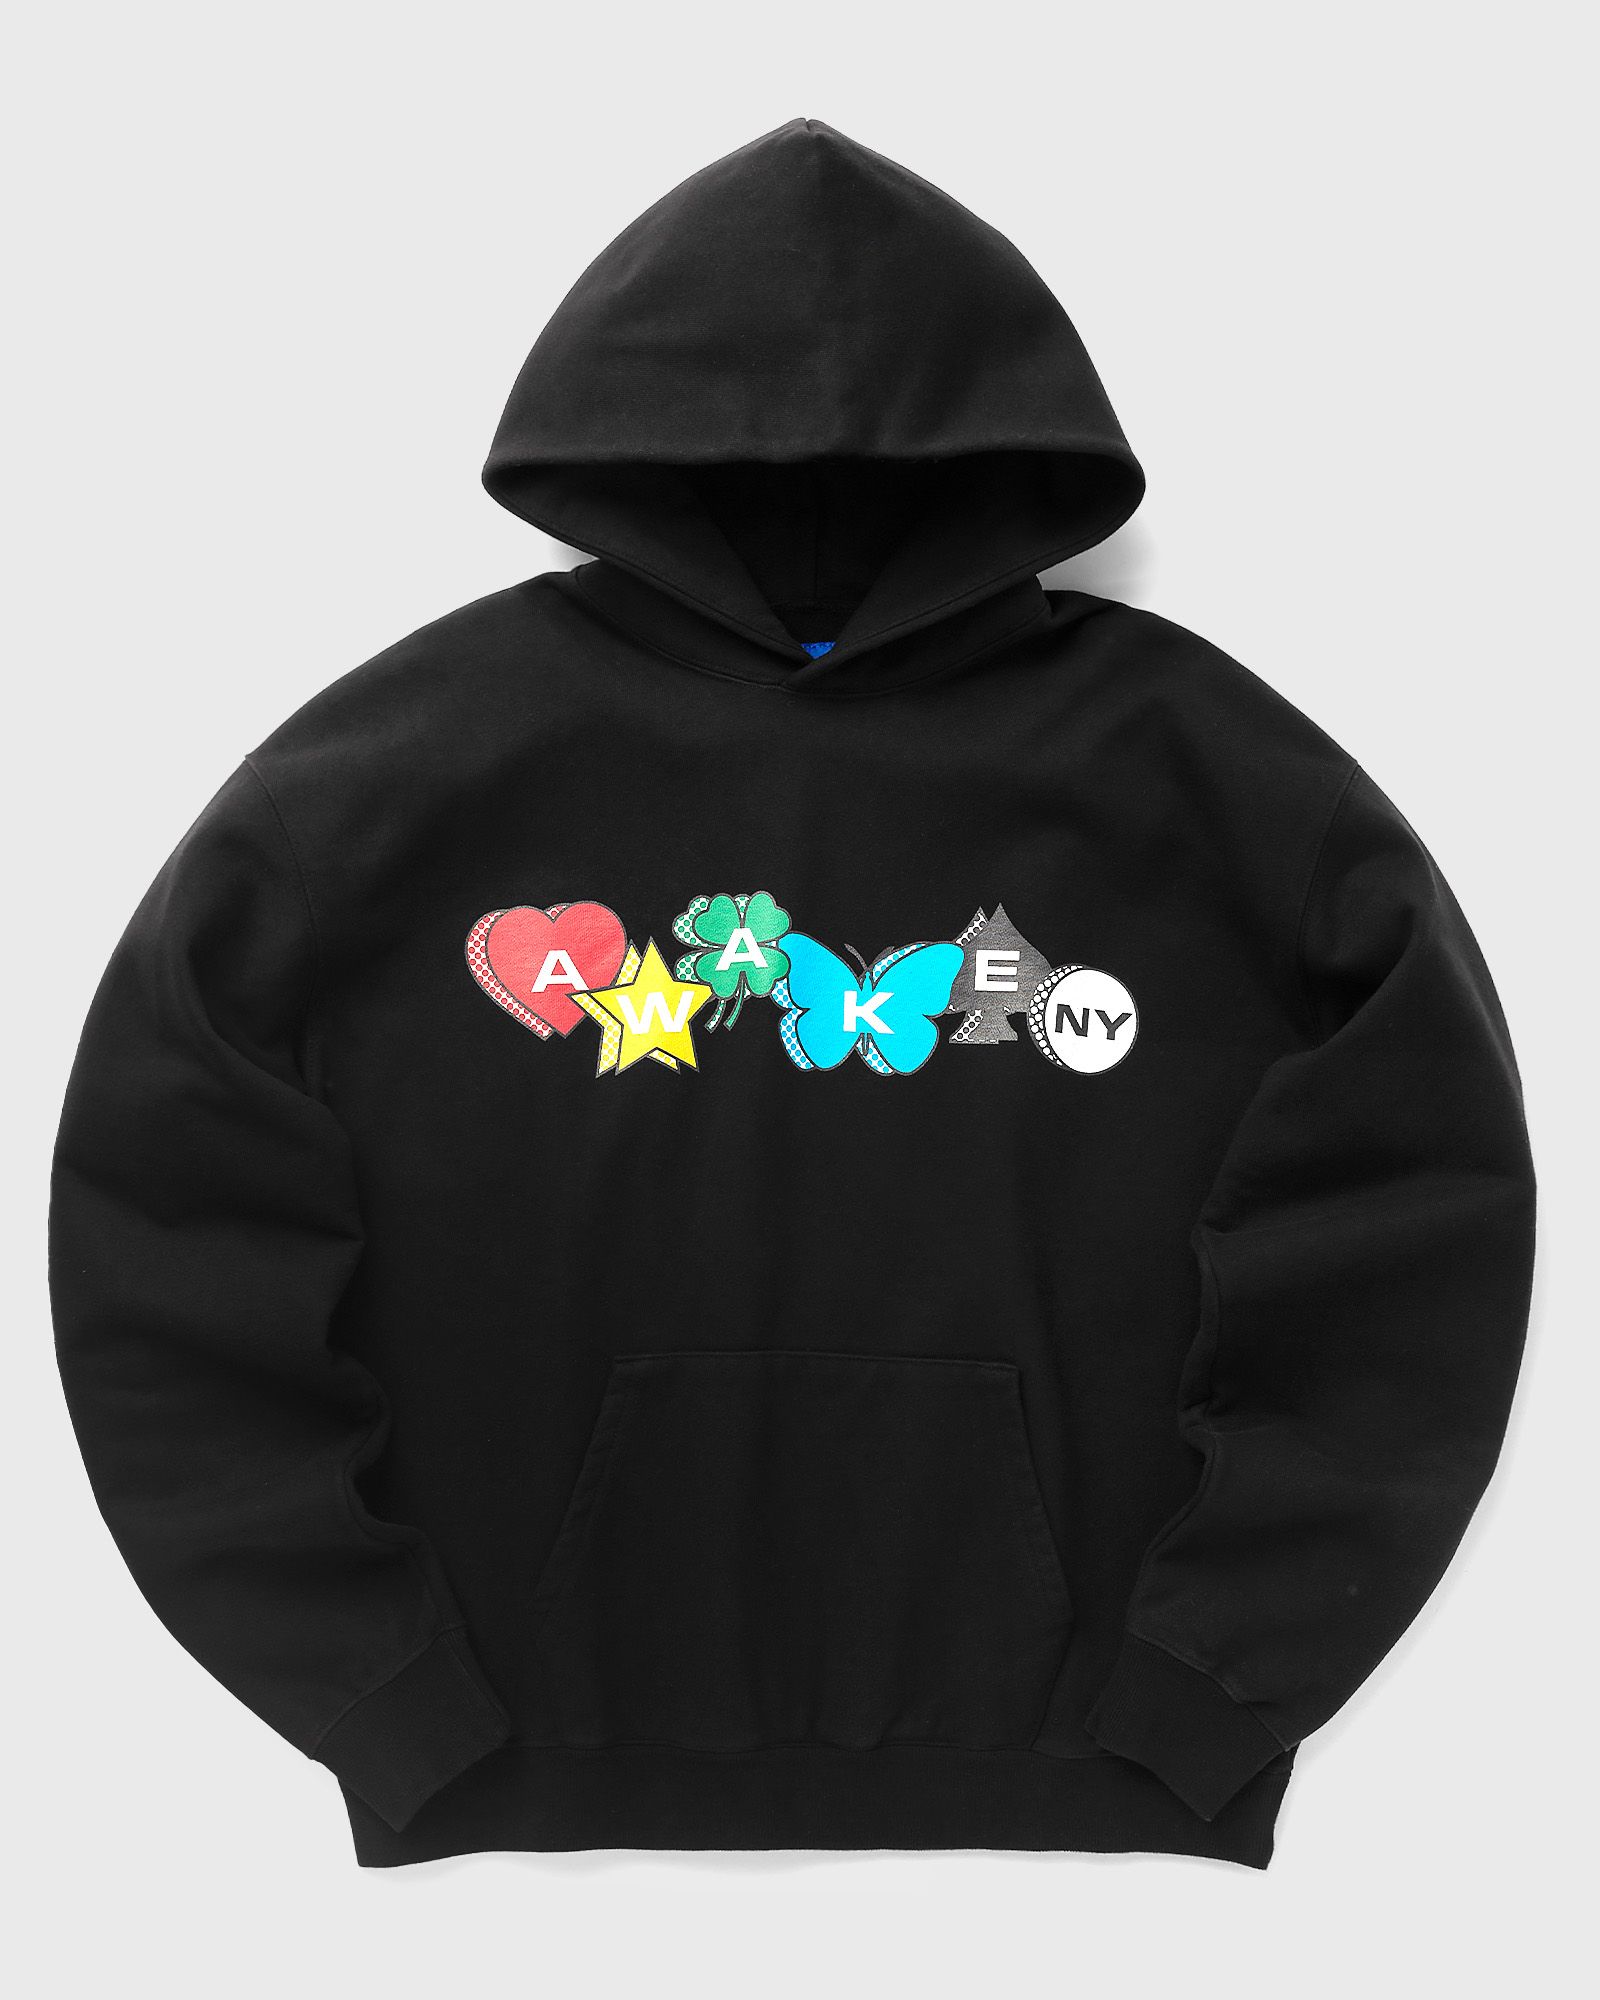 Awake - printed charm logo hoodie men hoodies black in größe:m